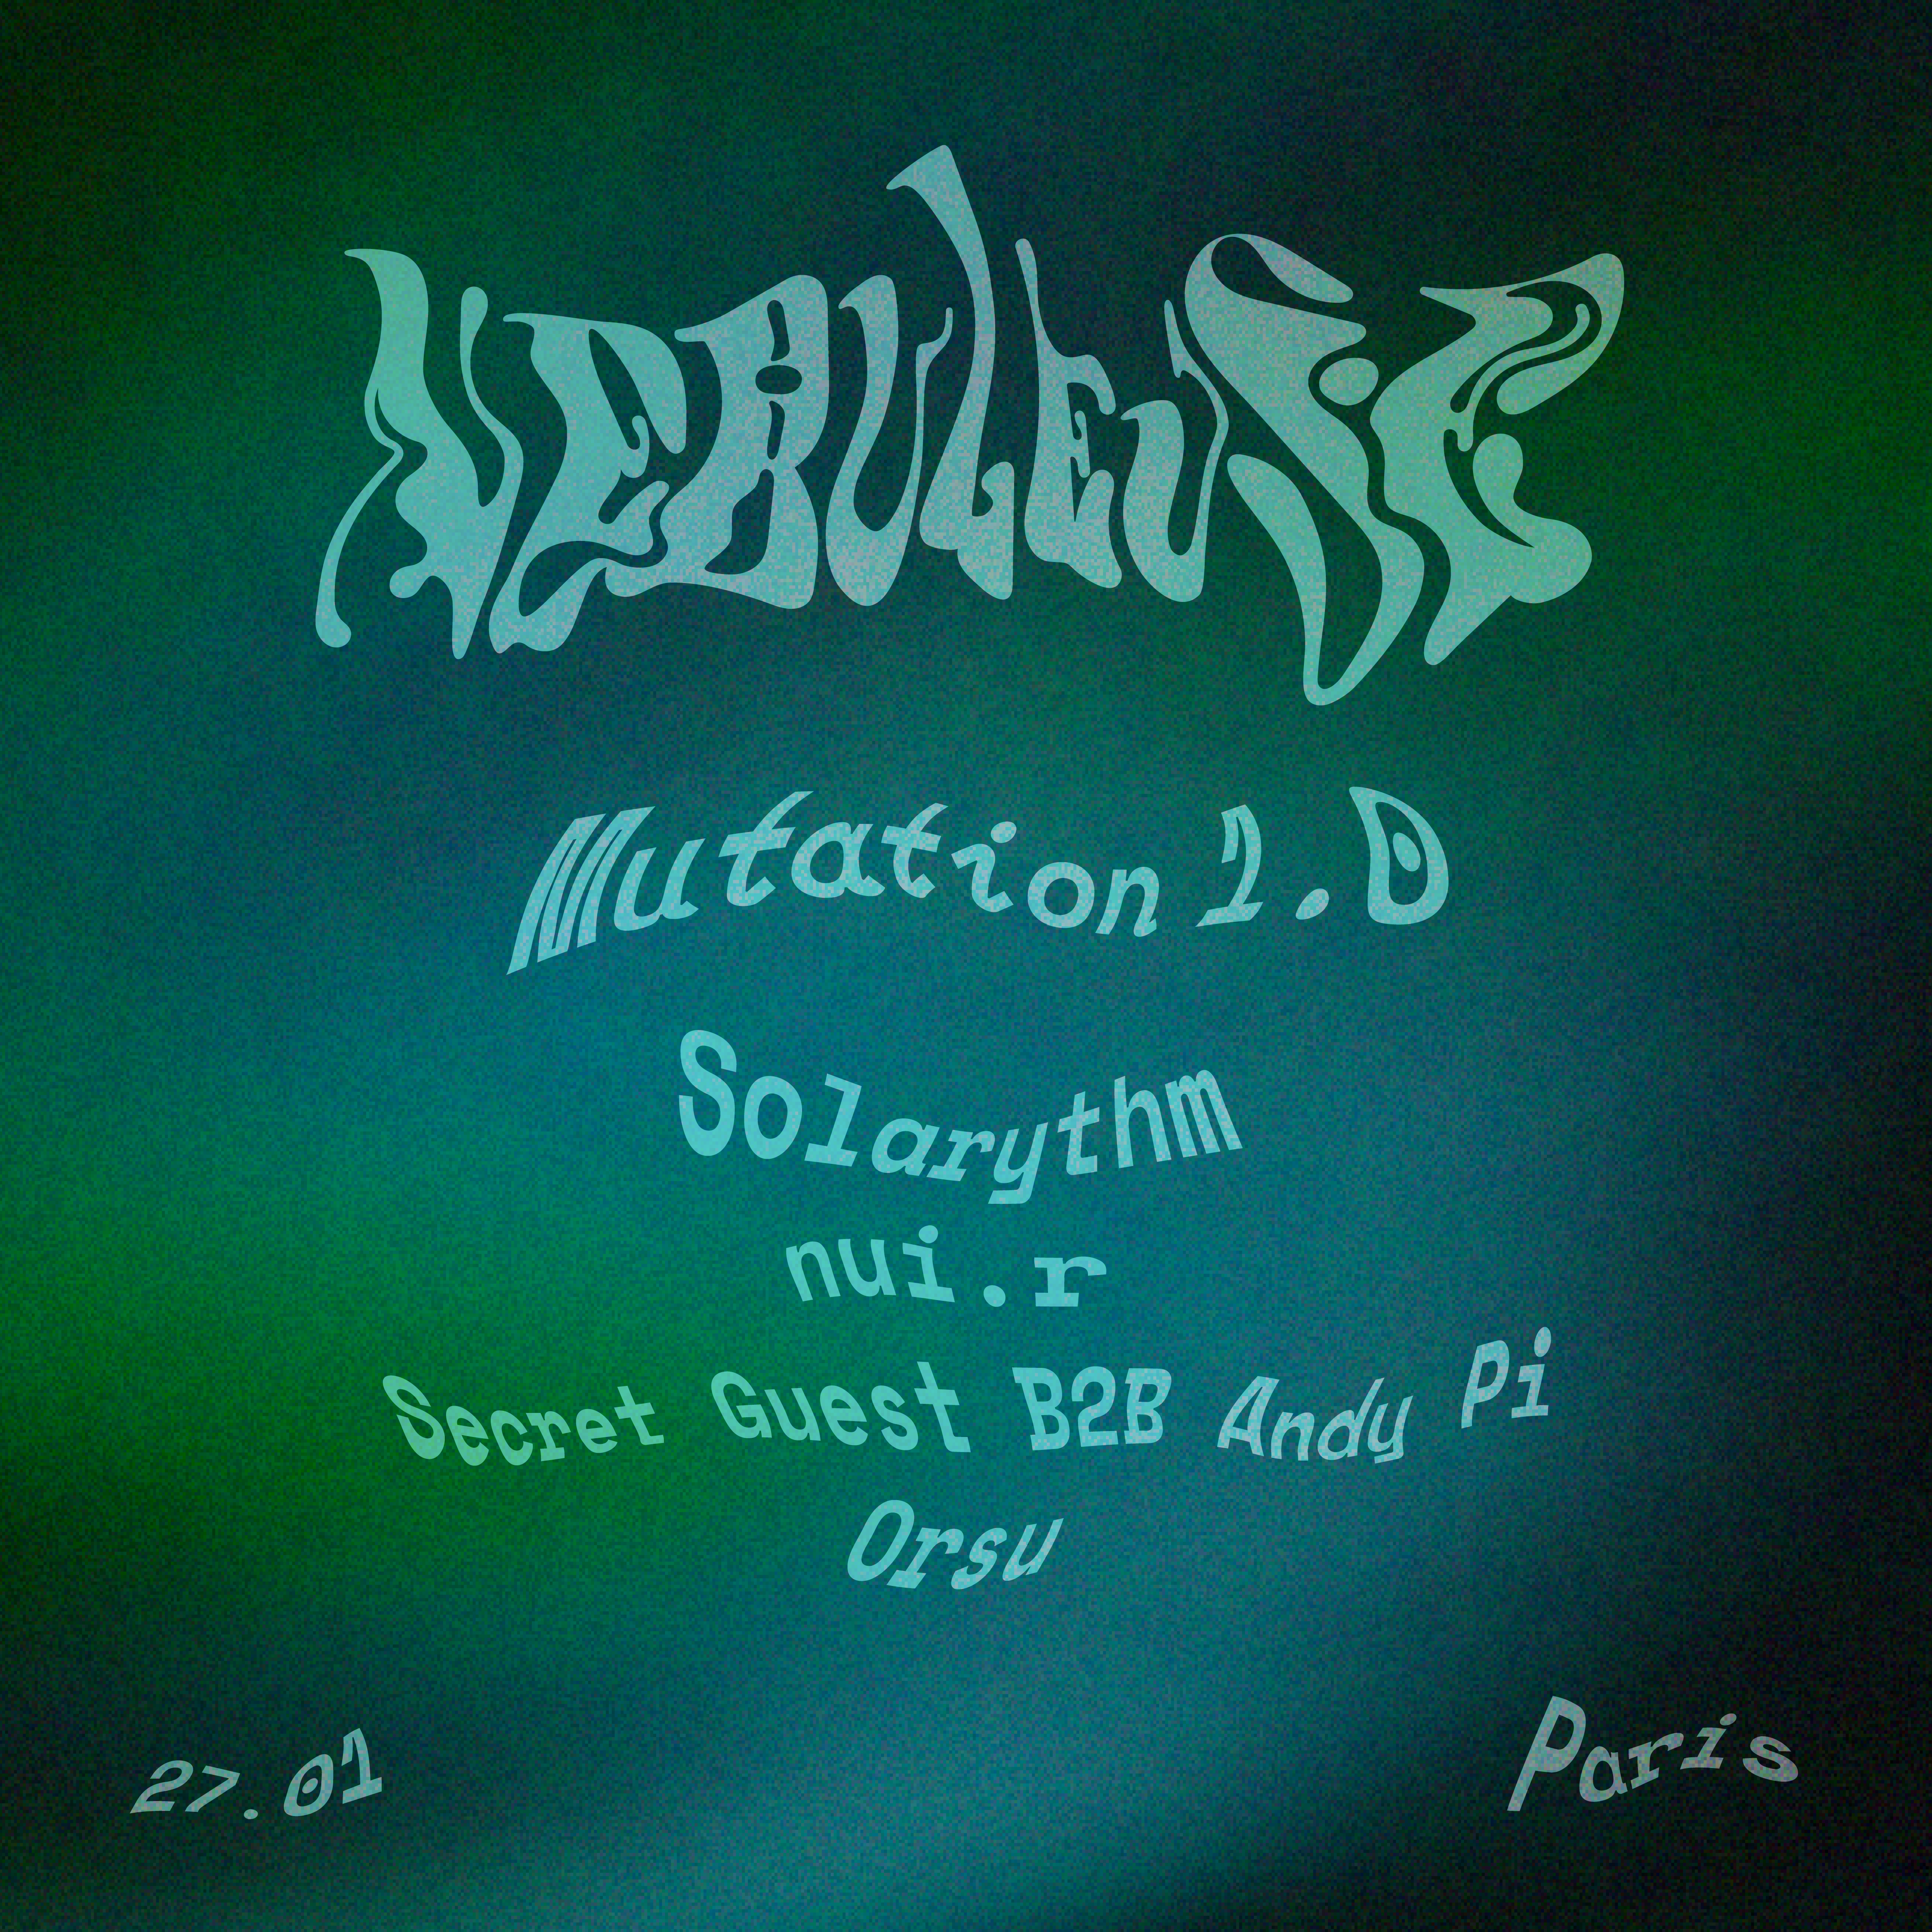 Nébuleuse: Mutation 1.0 w/ Solarythm, nui.r, Andy Pi, Orsu & Secret Guest - Página trasera